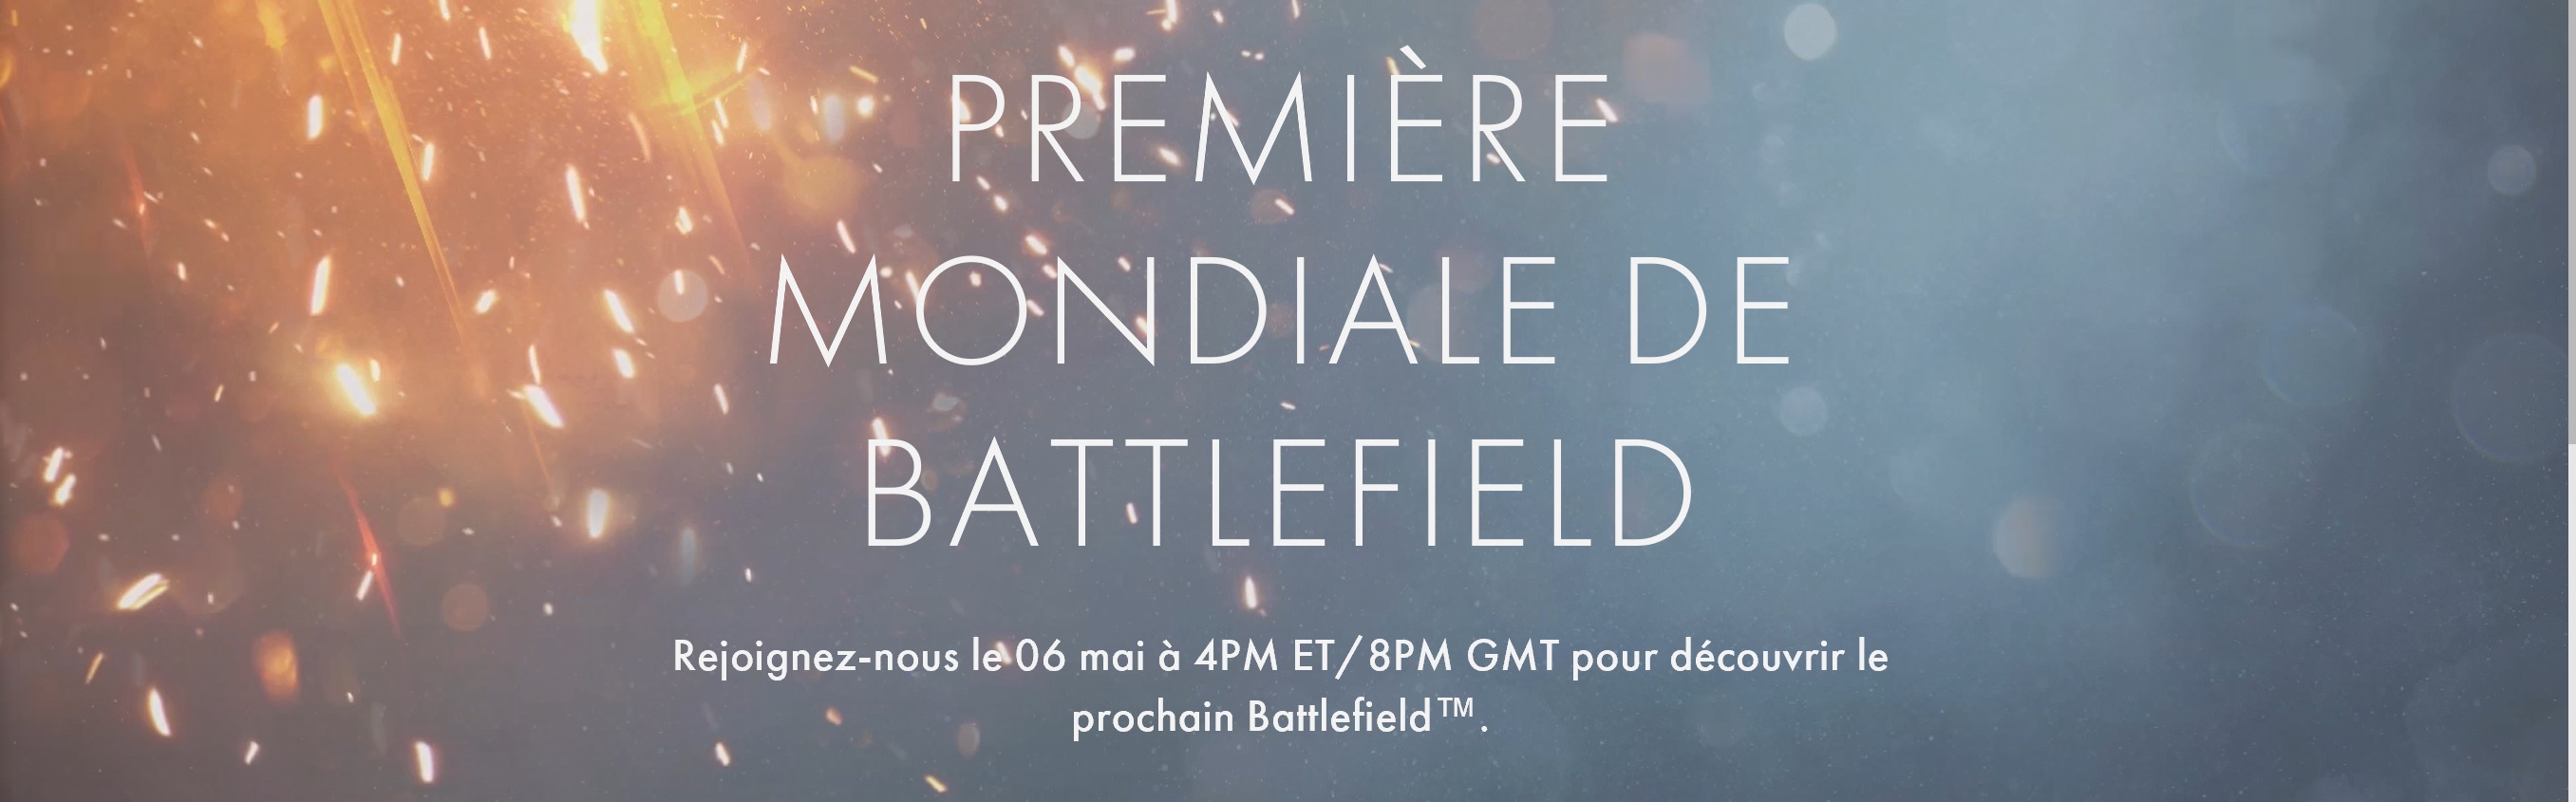 Battlefield 5 - Compte à rebours